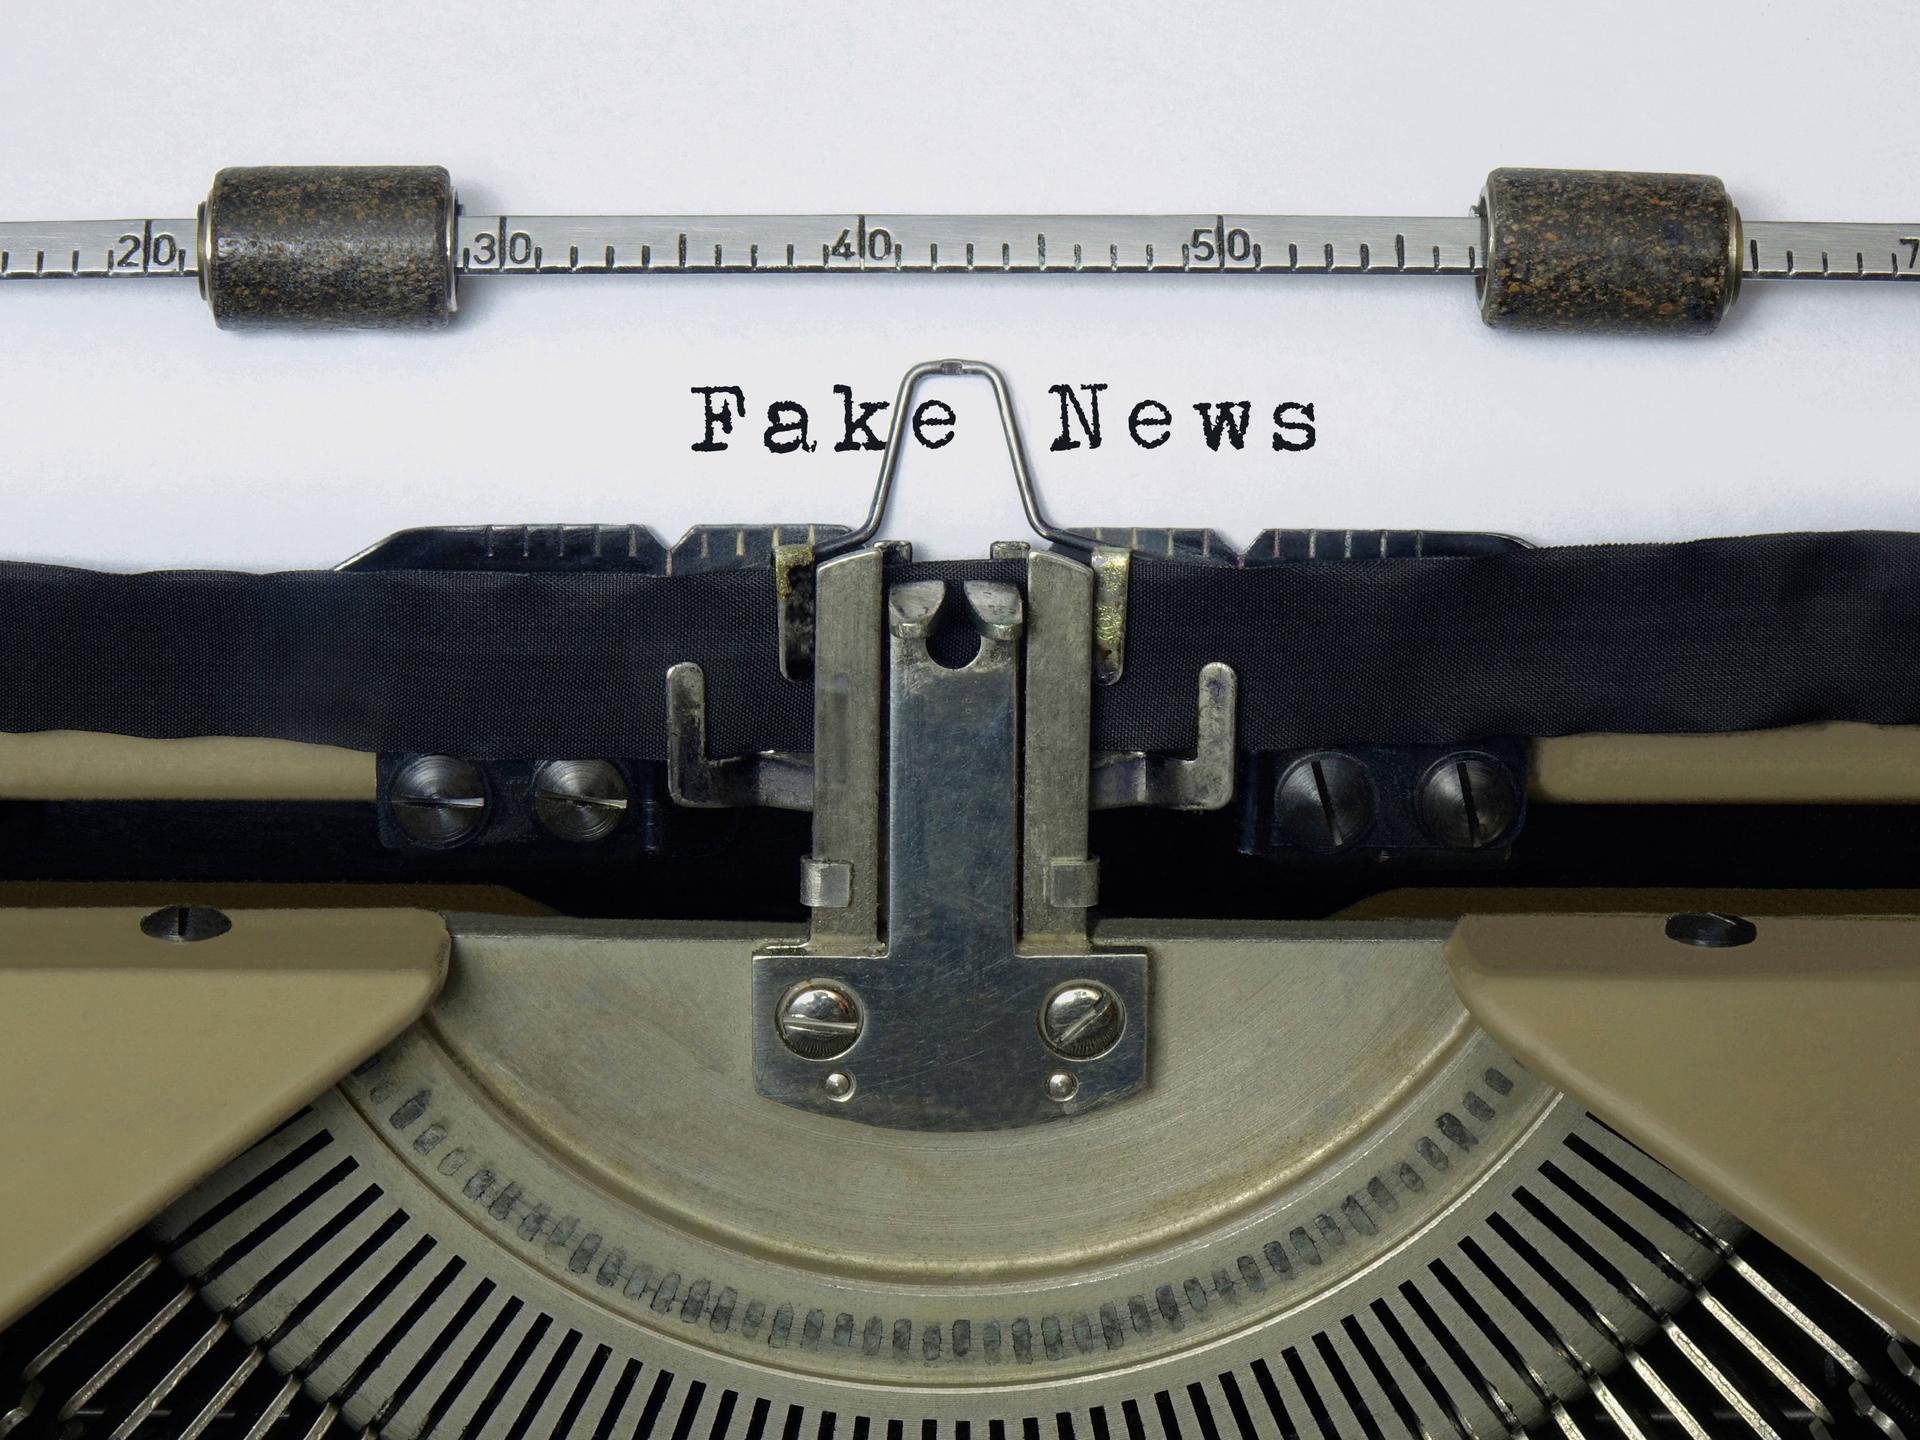 Auf dem Papier einer alten Schreibmaschine steht der Schriftzug Fake News.
